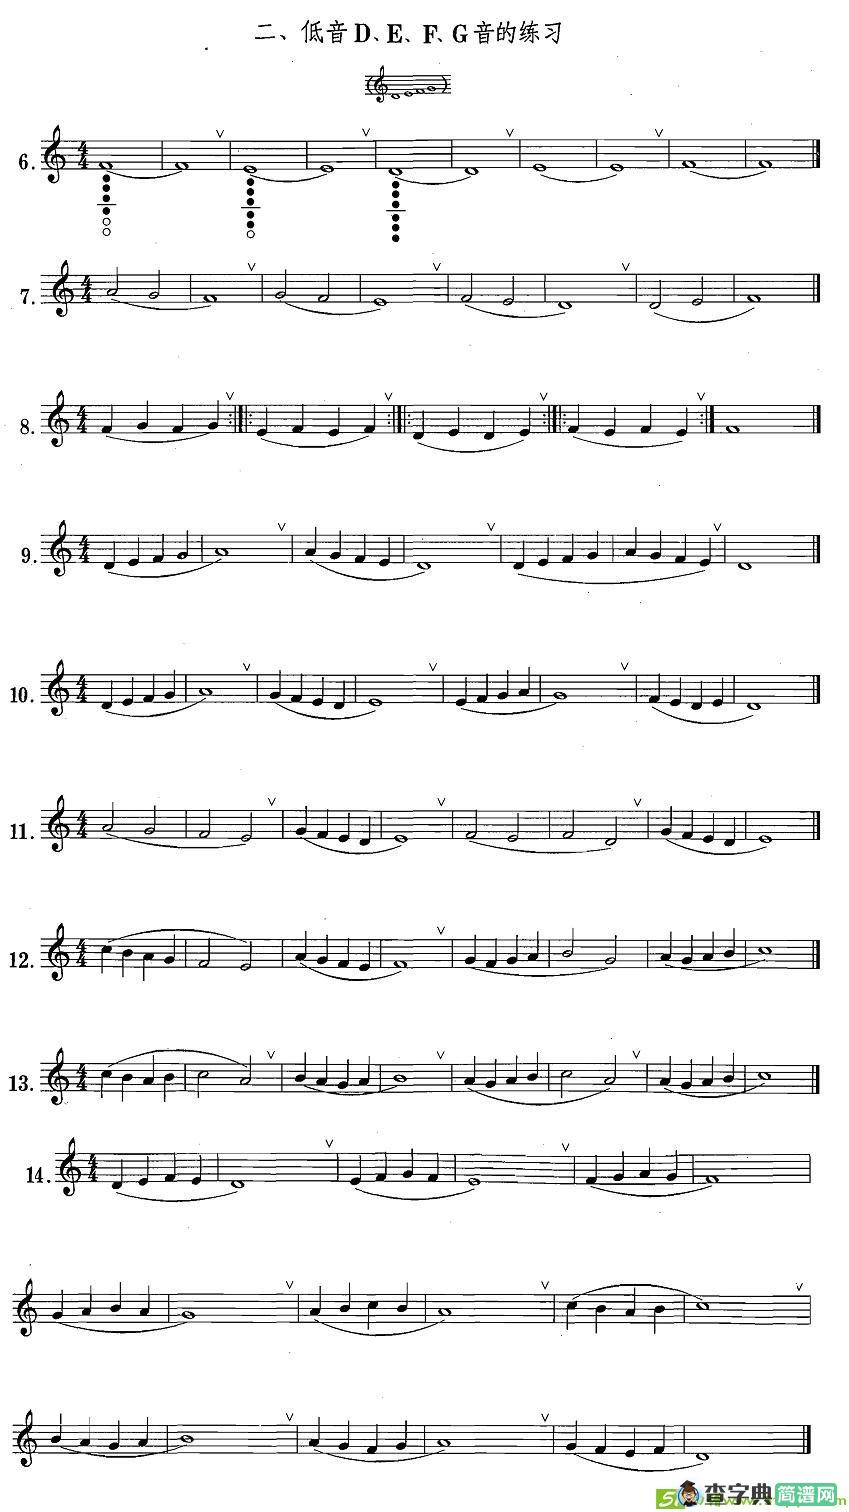 萨克斯练习曲合集低音D、E、F、G音的练习萨克斯谱